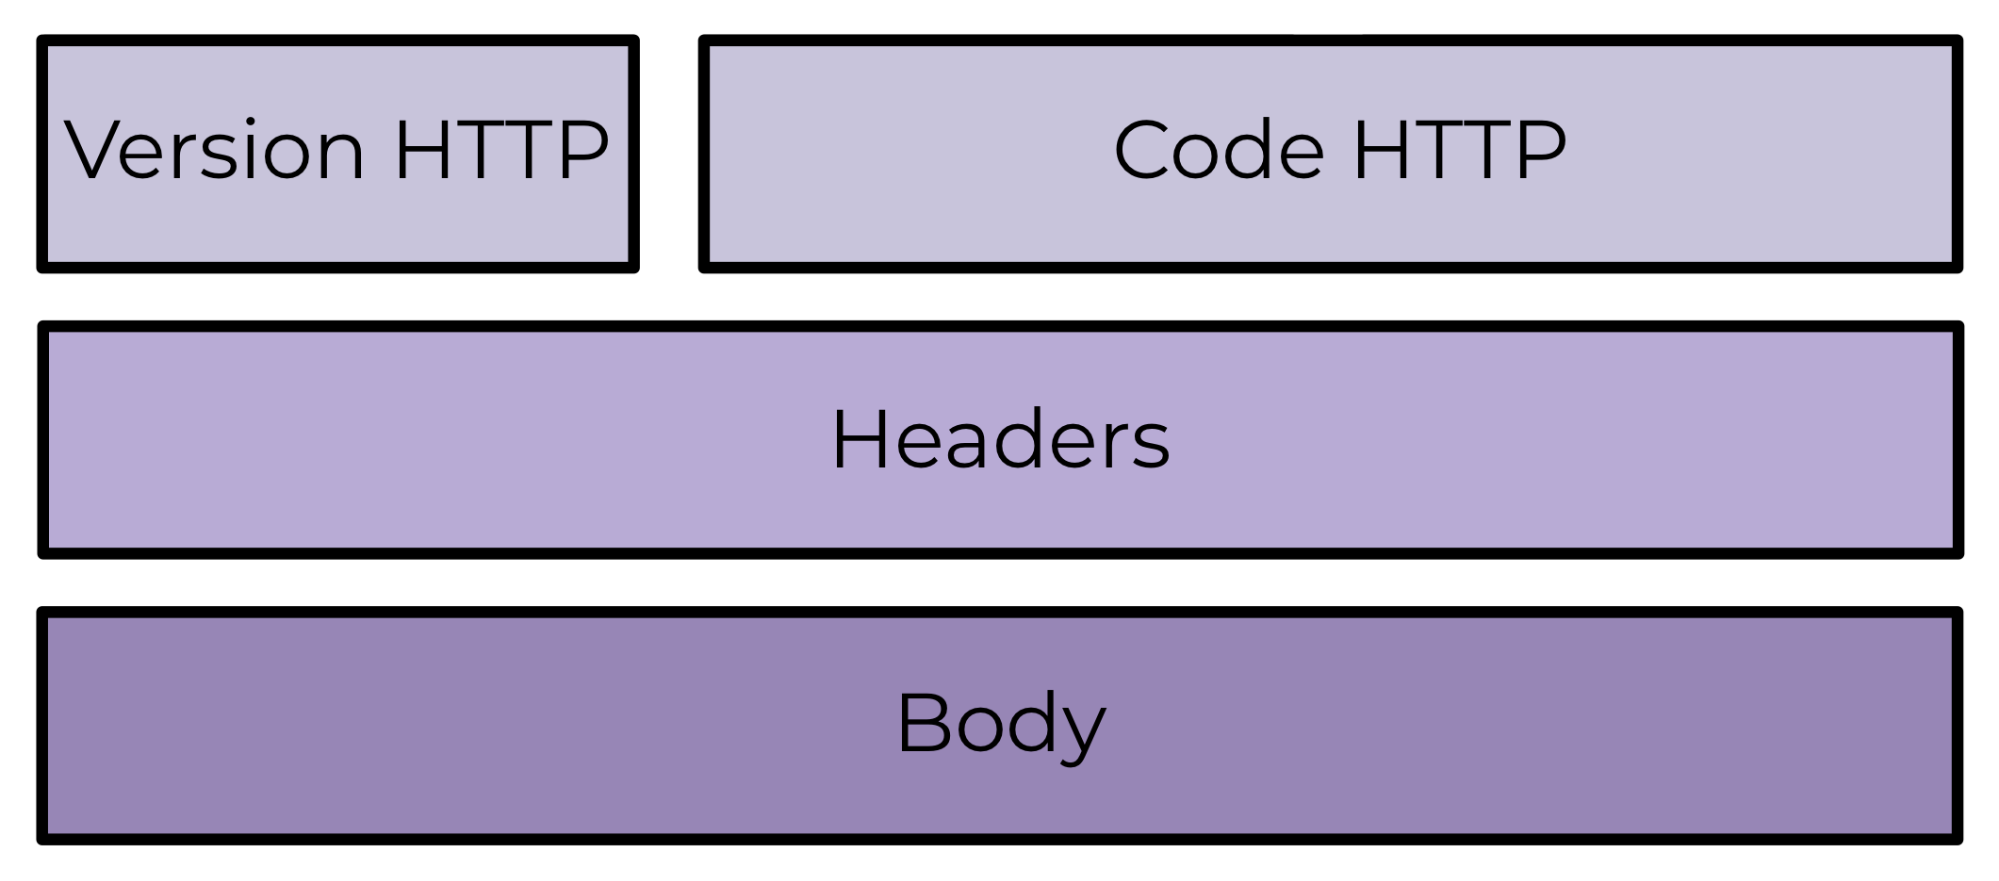 Une structure de réponse typique en 3 couches superposées : en bas le Body, au milieu le Header et au-dessus la version et le code HTTP.